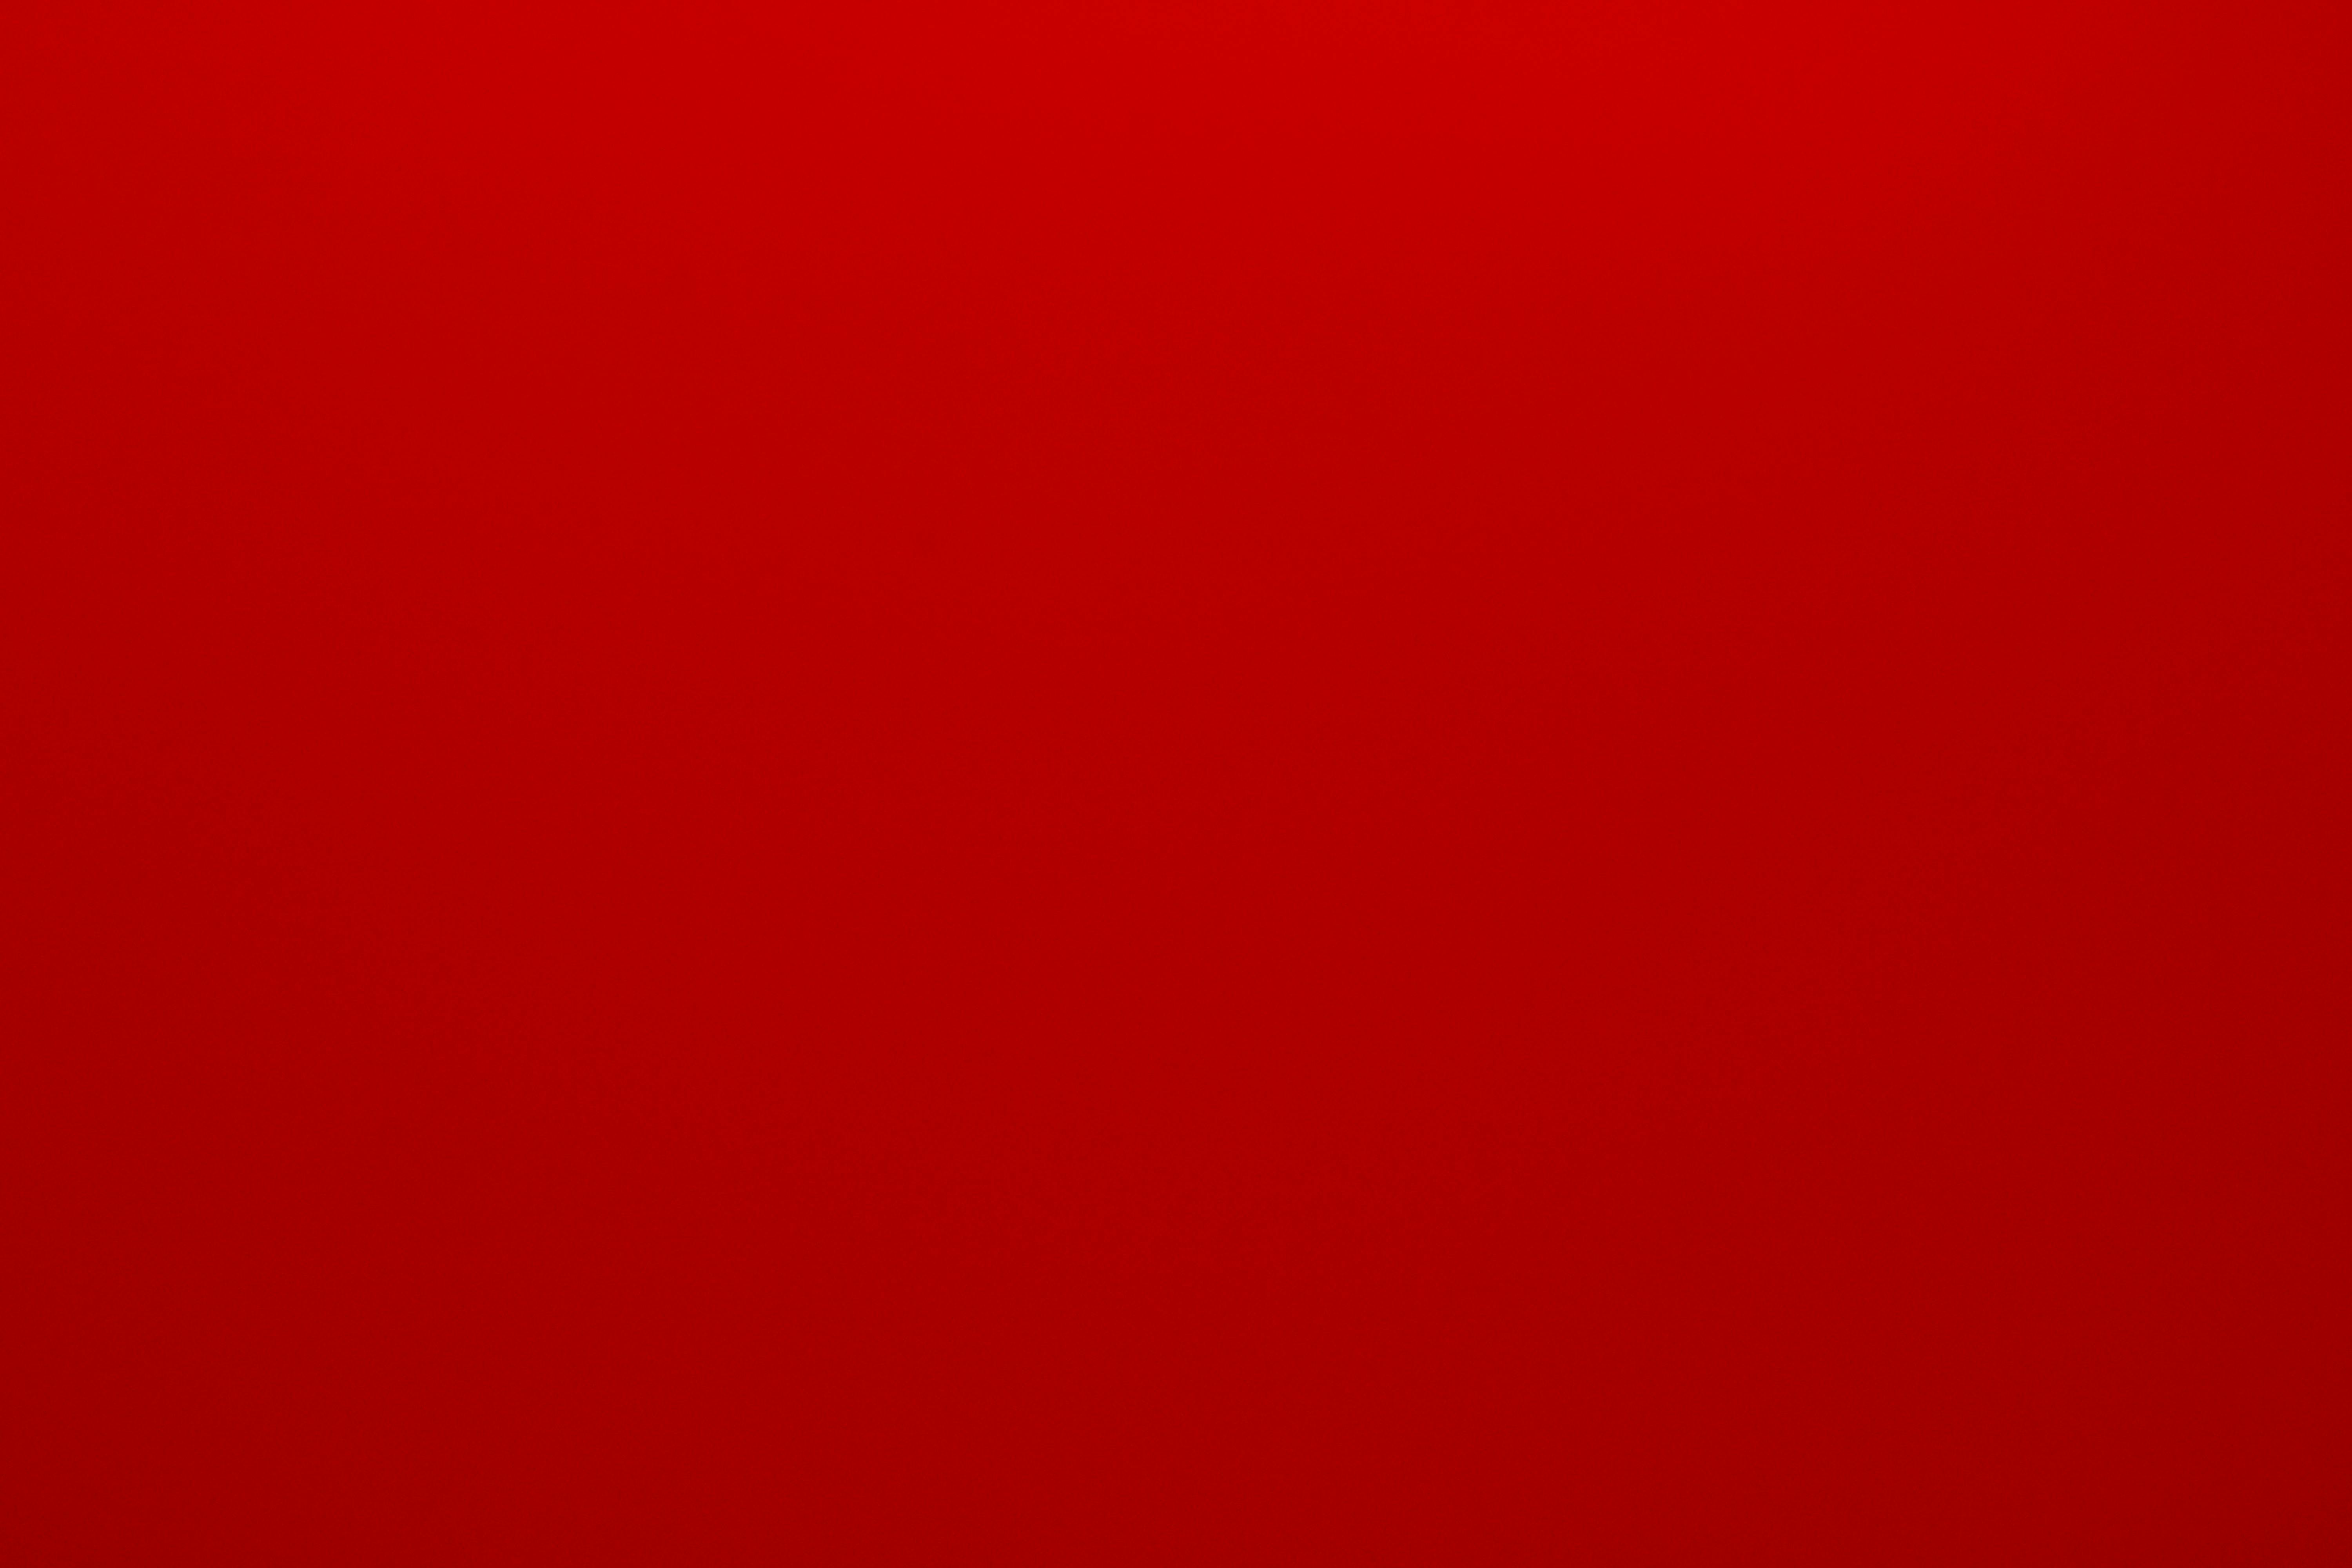 Bạn muốn một hình nền màu đỏ đậm để tạo nên sự nổi bật và sự vững chắc cho máy tính của mình? Hãy xem những hình ảnh nền màu đỏ đậm này để thấy được sự khác biệt và sự đẳng cấp được mang lại.